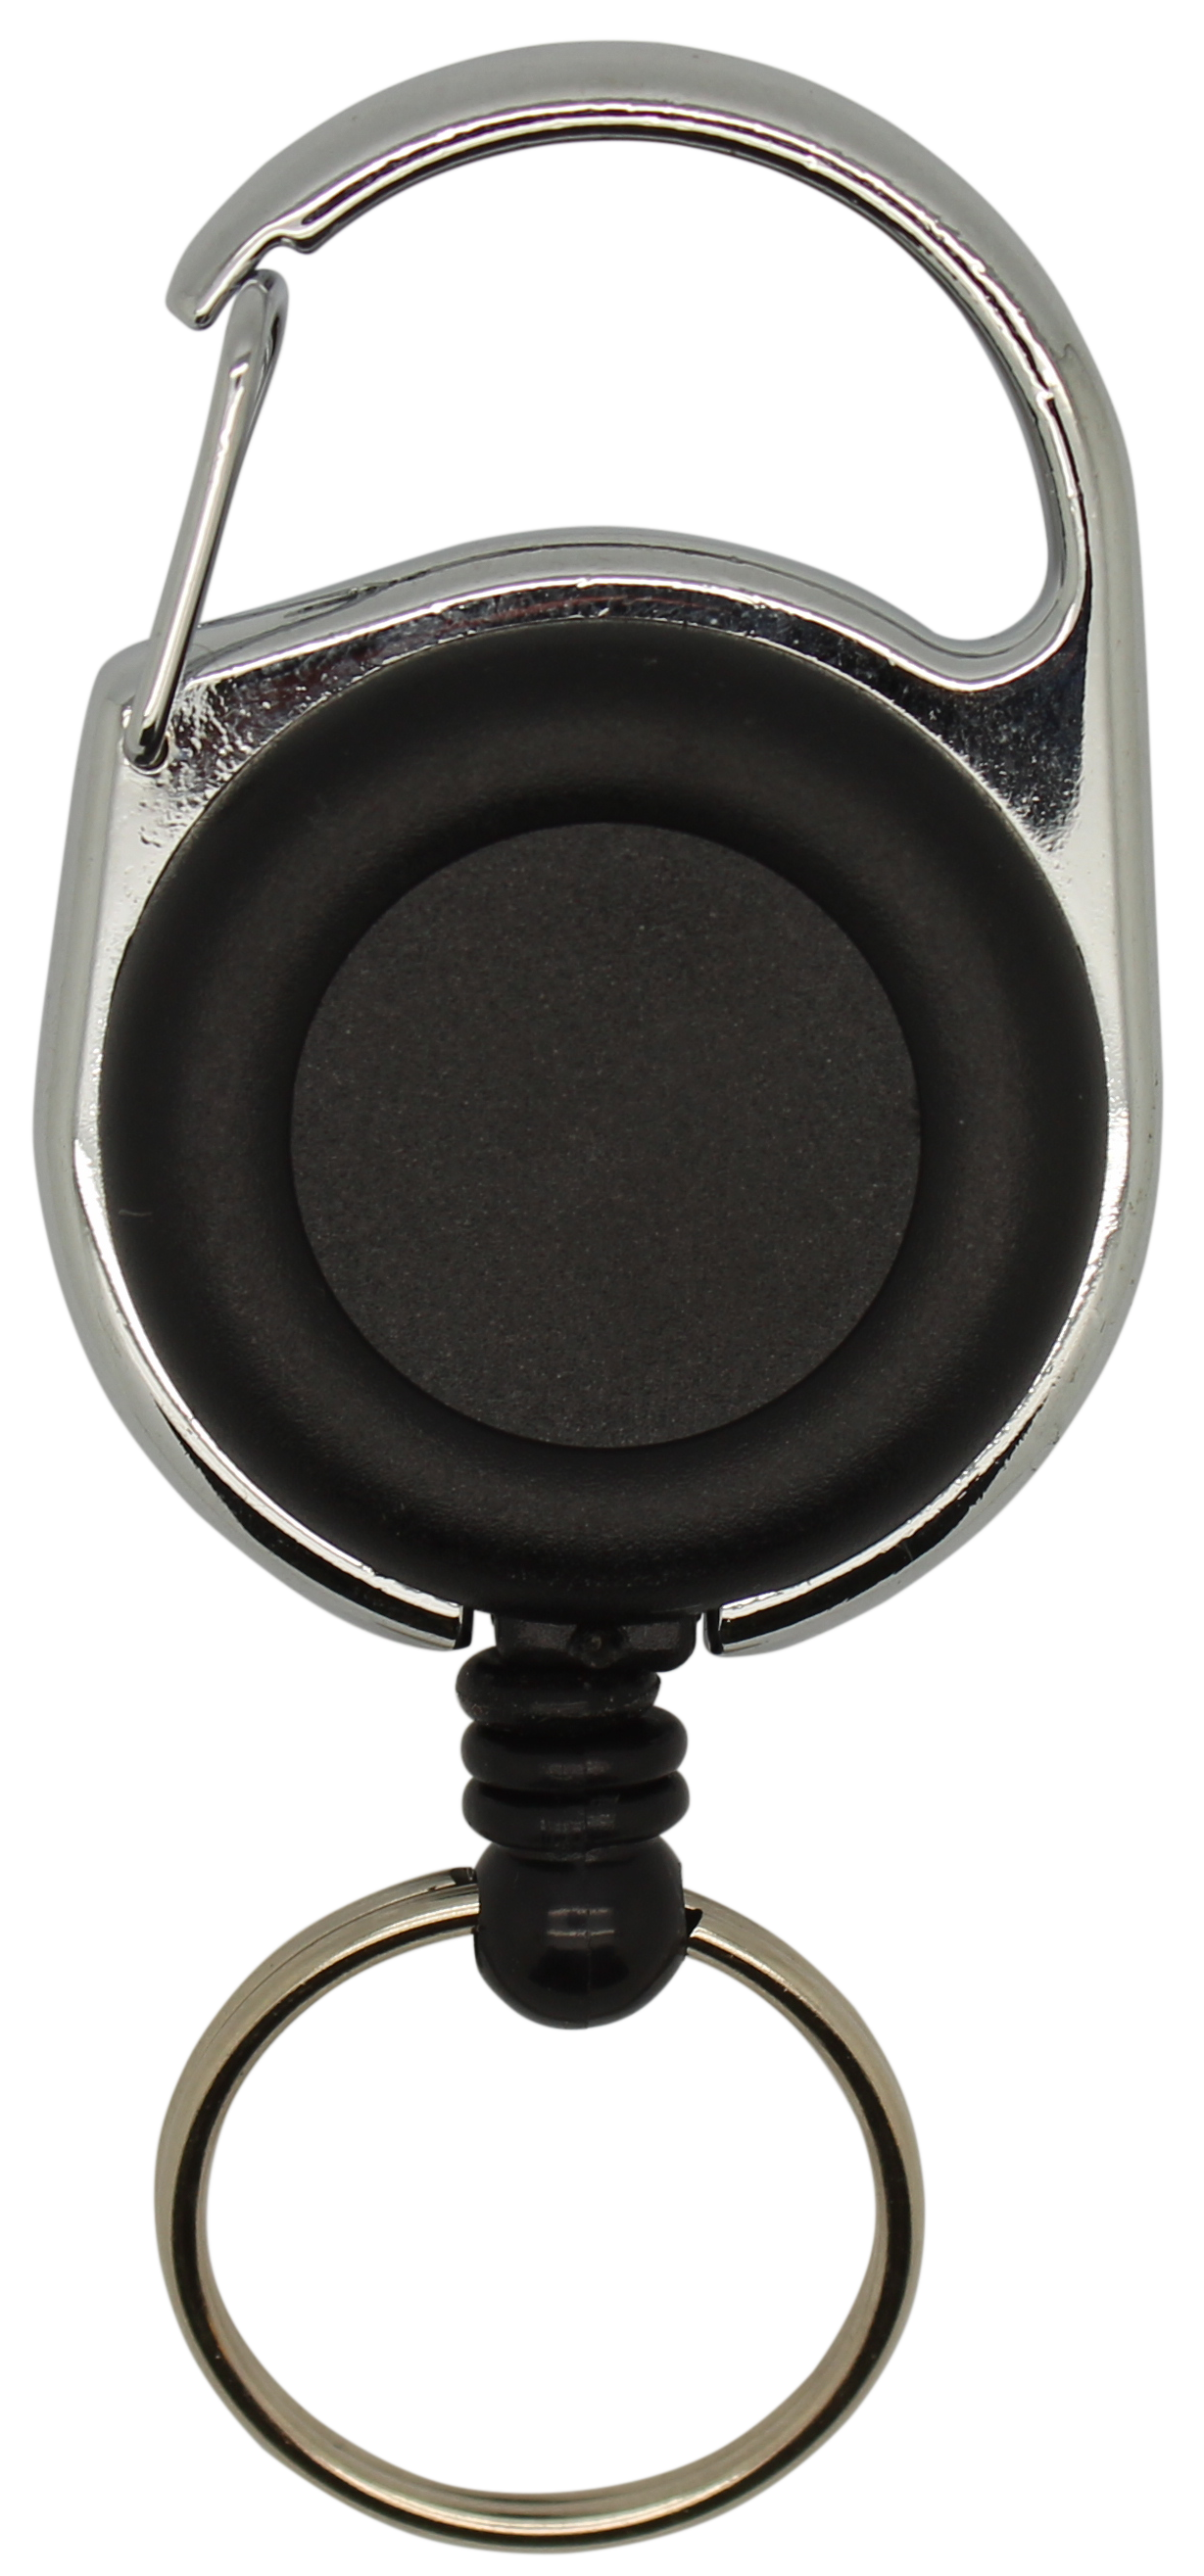 Jojo rund, vollfarbig schwarz, Karabinerhaken, Schlüsselring, Nylonschnur: 60 cm 